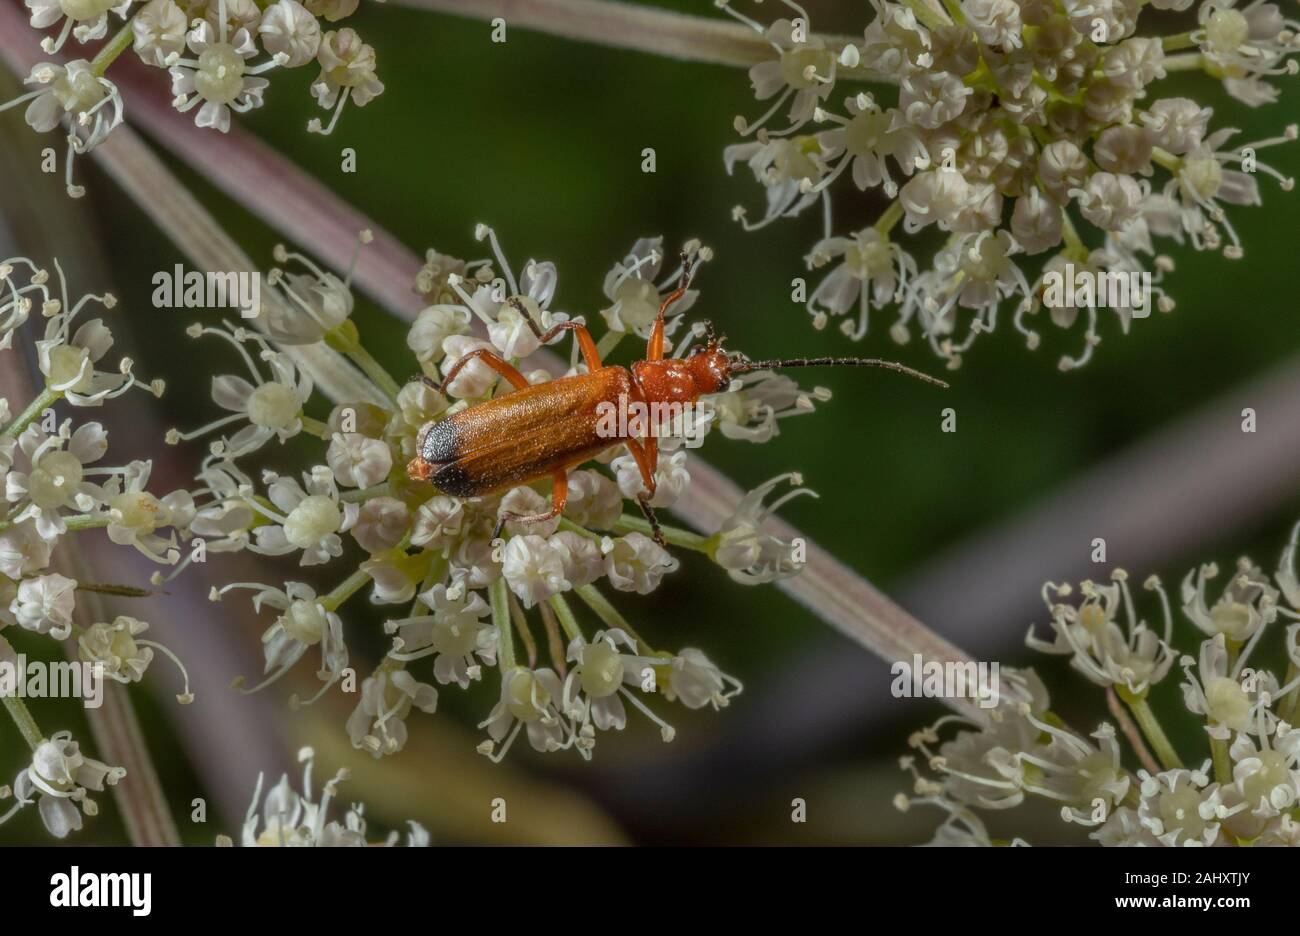 Les Coléoptères, Soldat rouge commun Rhagonycha fulva, se nourrissant d'Angelica fleurs. New Forest. Banque D'Images